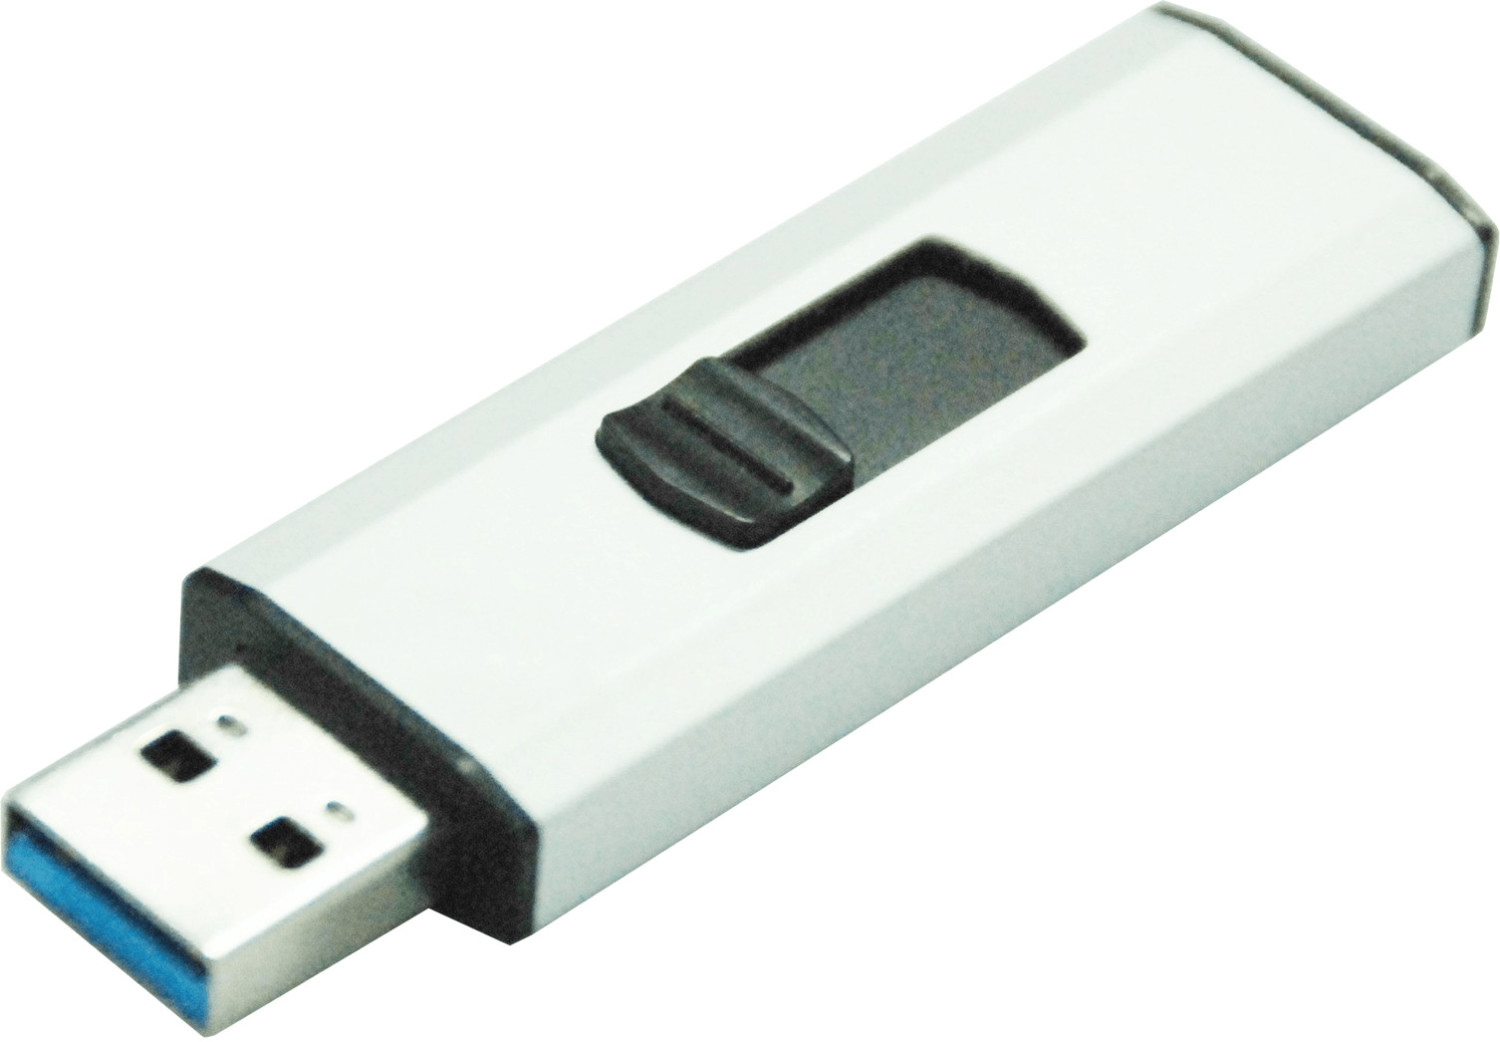 MediaRange SuperSpeed USB 3.0 Speicherstick 8GB